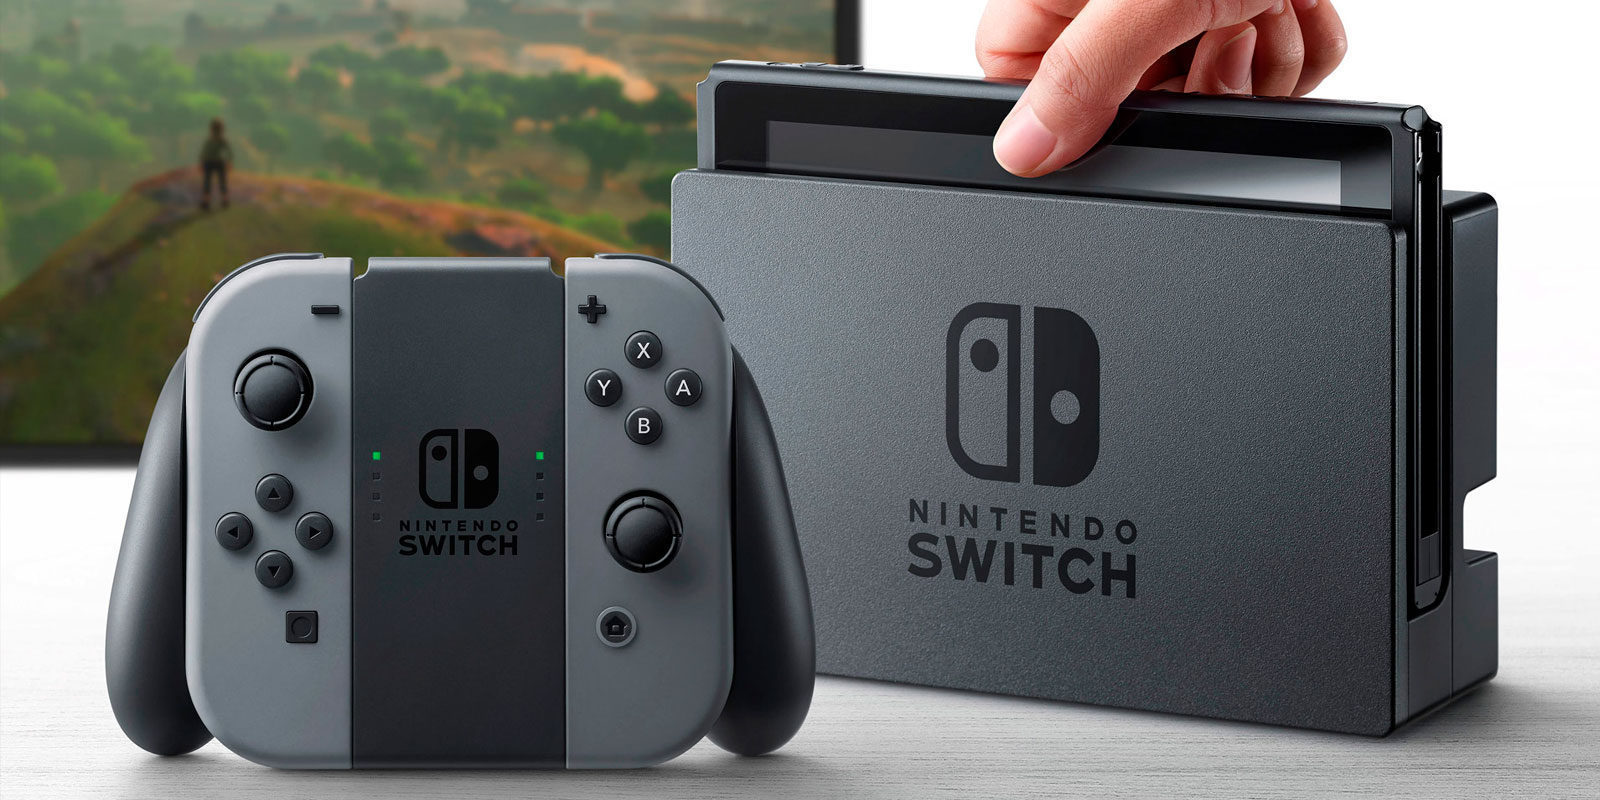 Nintendo distribuye Switch por aire para satisfacer la alta demanda